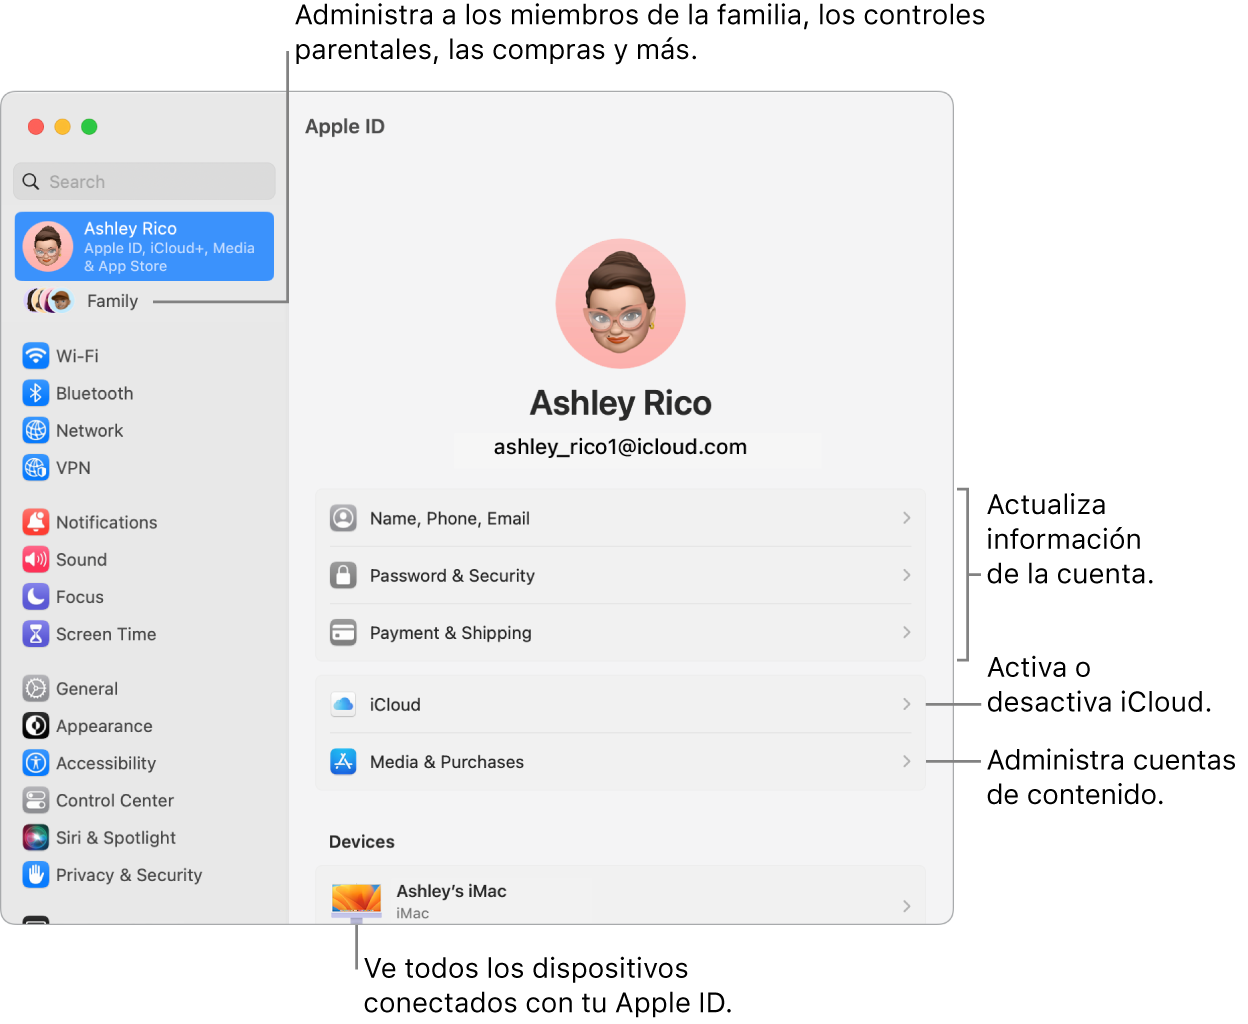 La configuración de Apple ID en Configuración del Sistema con textos para actualizar la información de la cuenta, activar o desactivar funciones de iCloud, administrar cuentas de contenido, y Familia, donde puedes administrar familiares, controles parentales, compras y más.